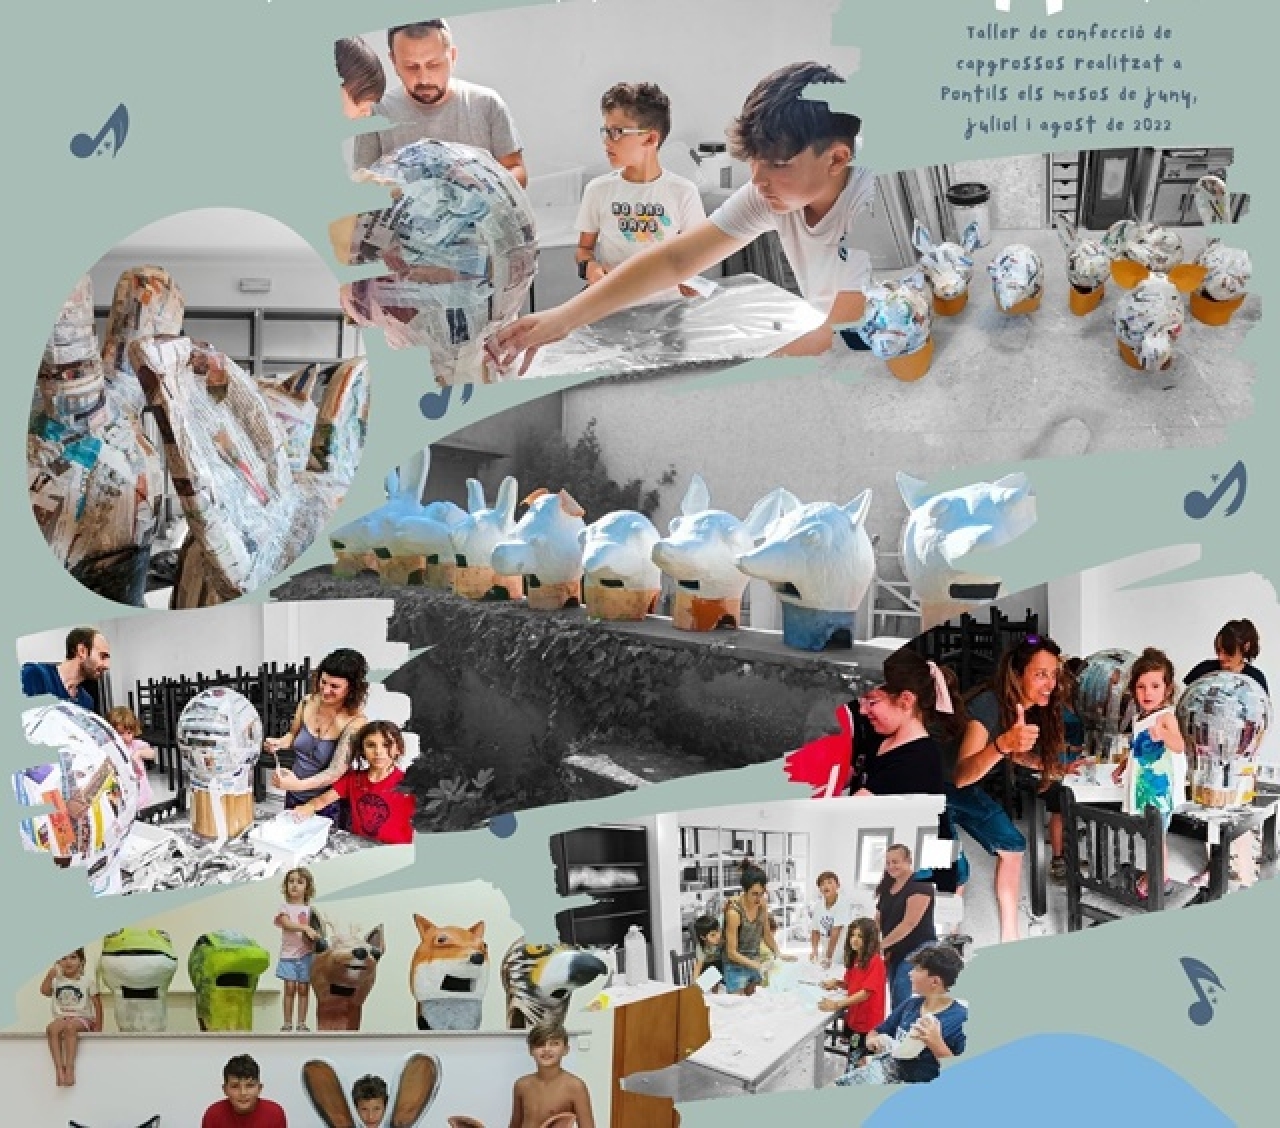 Detall del cartell del taller de confecció dels capsgrossos de la Vall de Pontils